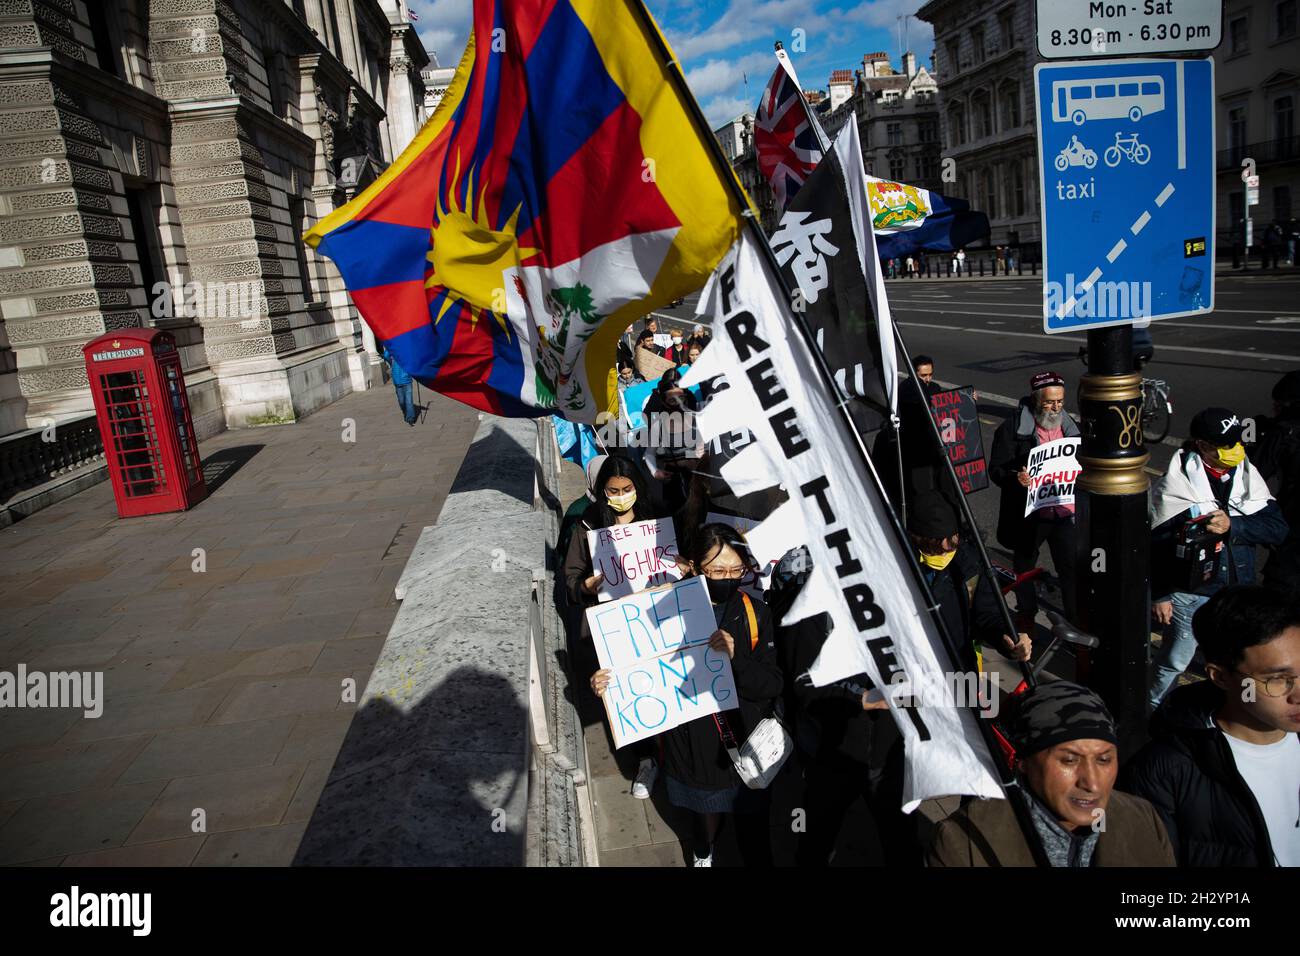 Londra, Regno Unito. 24 ottobre 2021. I manifestanti detengono bandiere e cartelli che esprimono le loro opinioni durante la manifestazione.Un raduno organizzato da sei diversi gruppi di diritti umani di Uyghur, Tibet e Hong Kong che chiedono “dire no alle Olimpiadi invernali di Pechino, dire no al genocidio”, che si è collegato a tre obiettivi fondamentali: "Protesta contro le Olimpiadi invernali di Pechino del 2022", "Uyghurs, tibetani e popolo di Hong Kong" e "consegnare una torcia relè per interpretare lo spirito olimpico". Credit: SOPA Images Limited/Alamy Live News Foto Stock